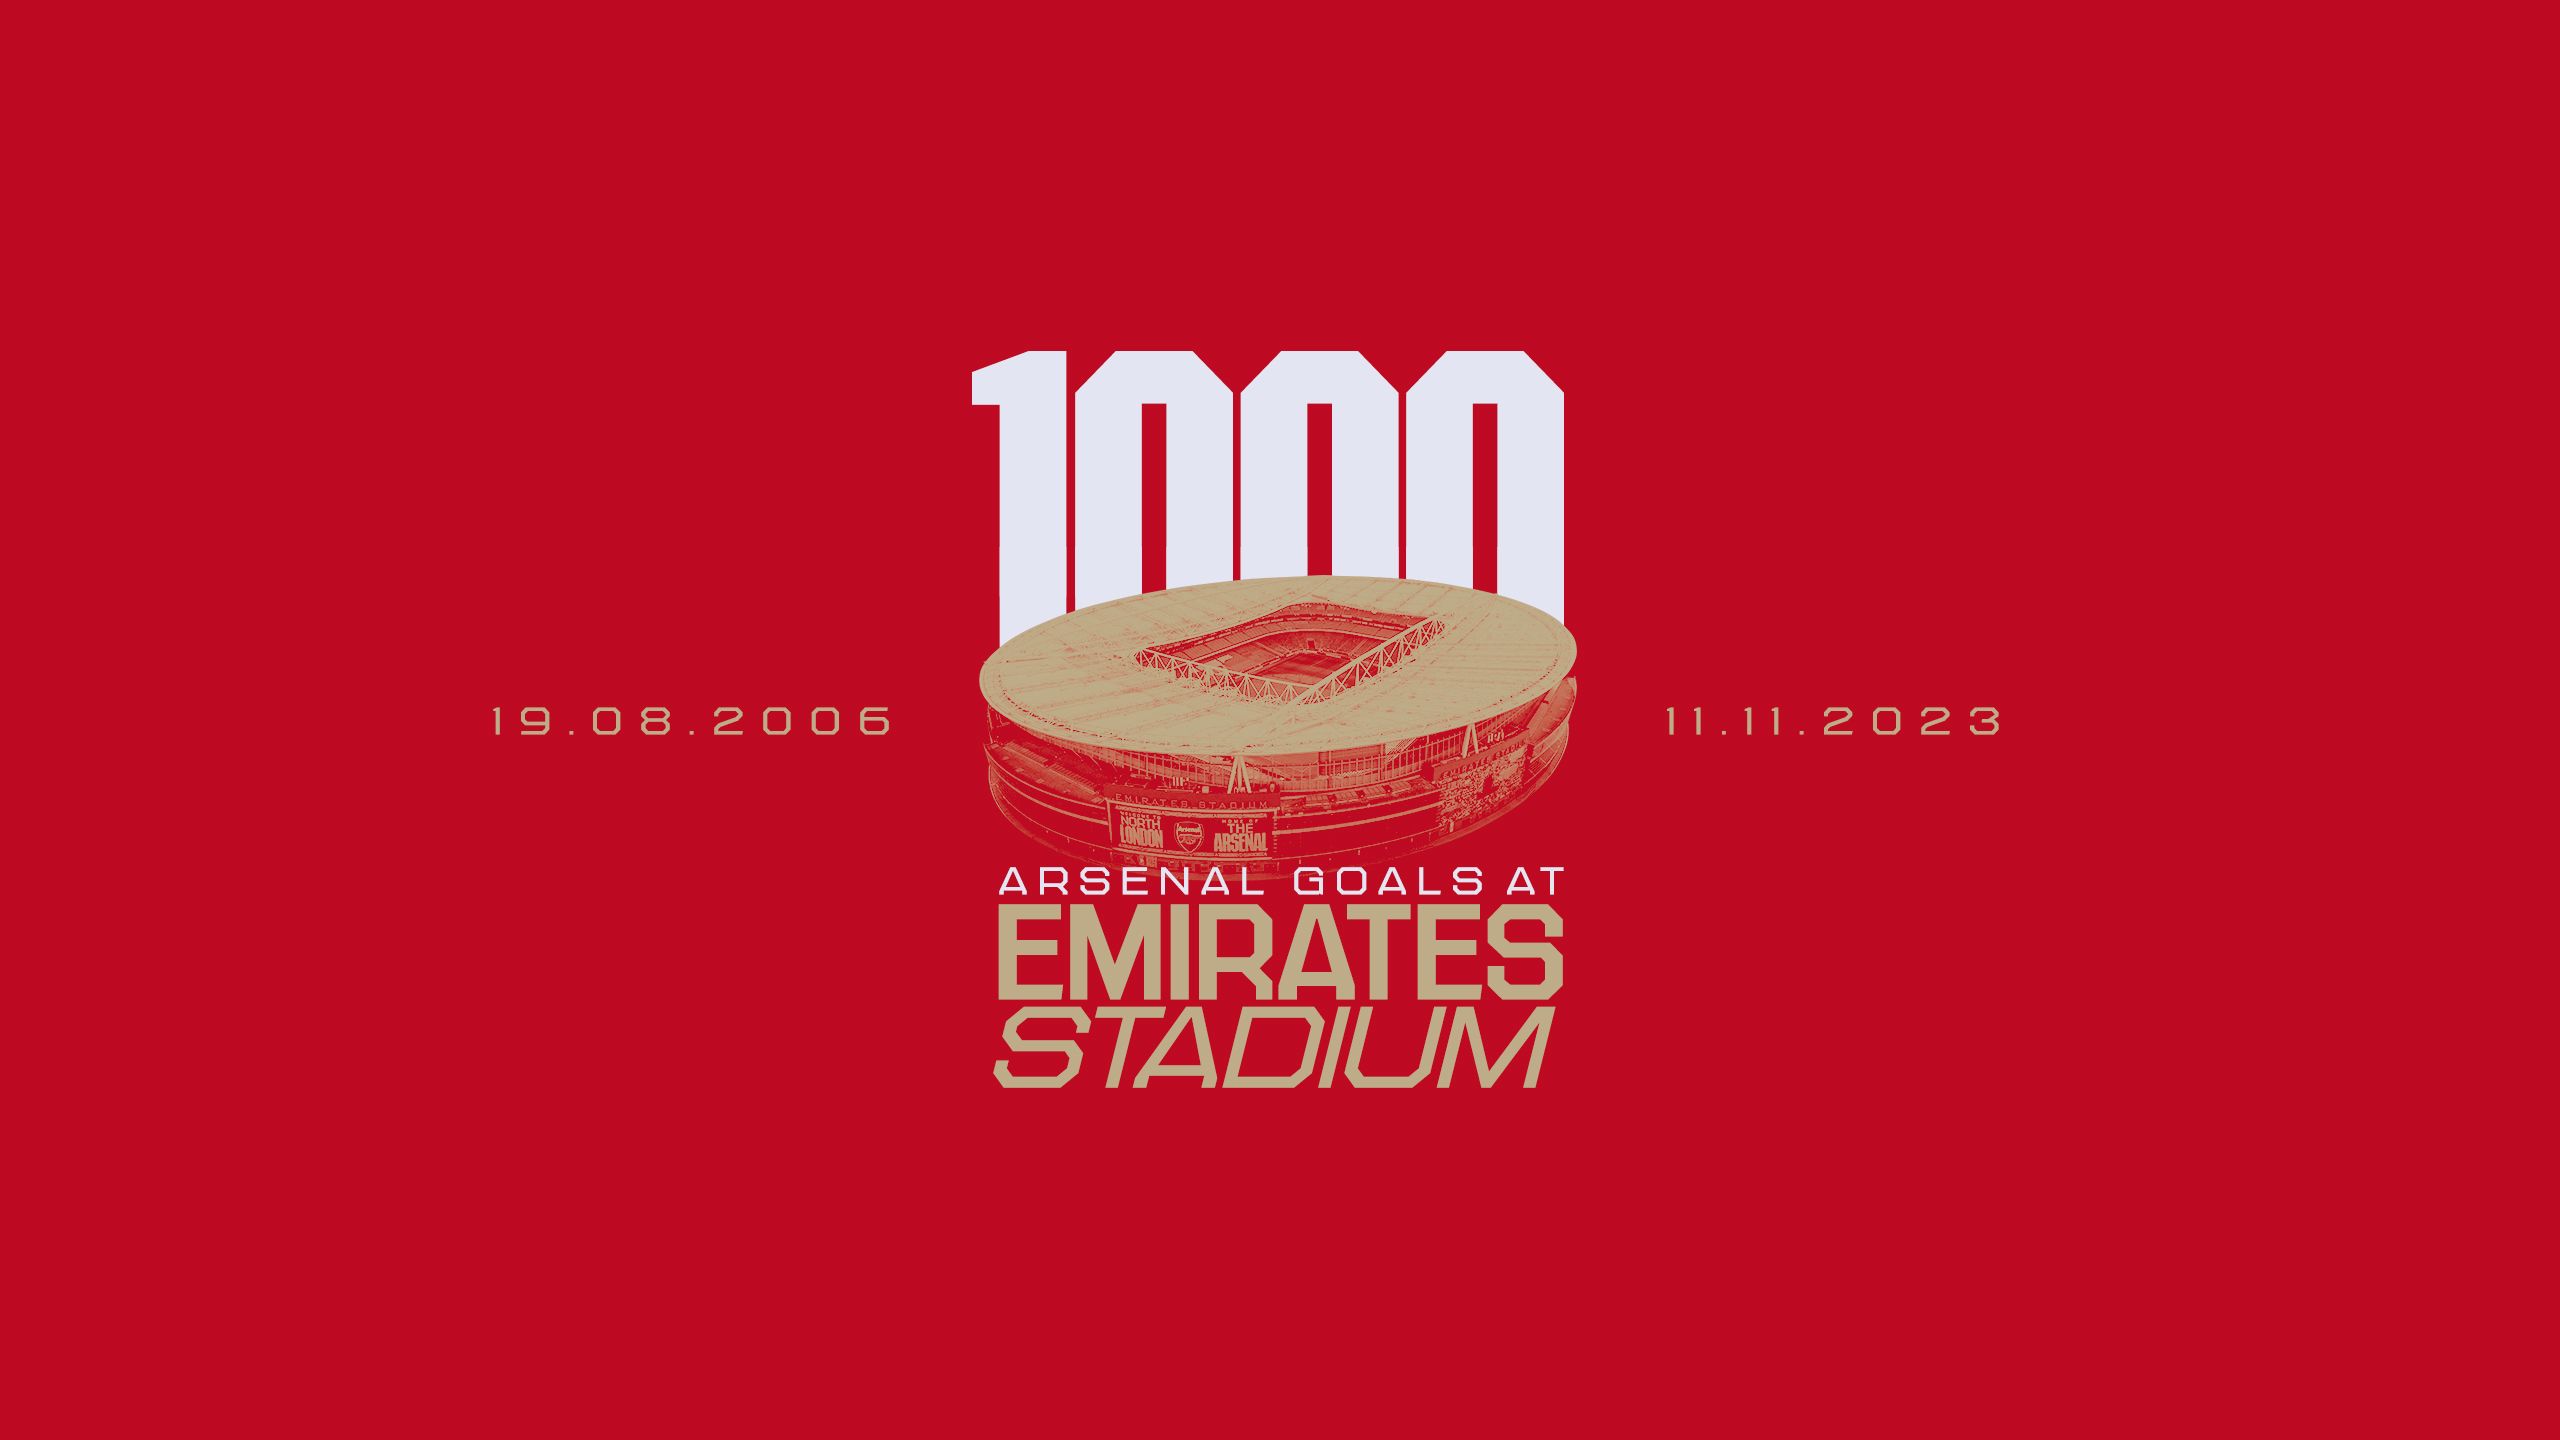 Title: 1000 Arsenal Goals at Emirates Stadium, 19.08.2006-11.11.2023